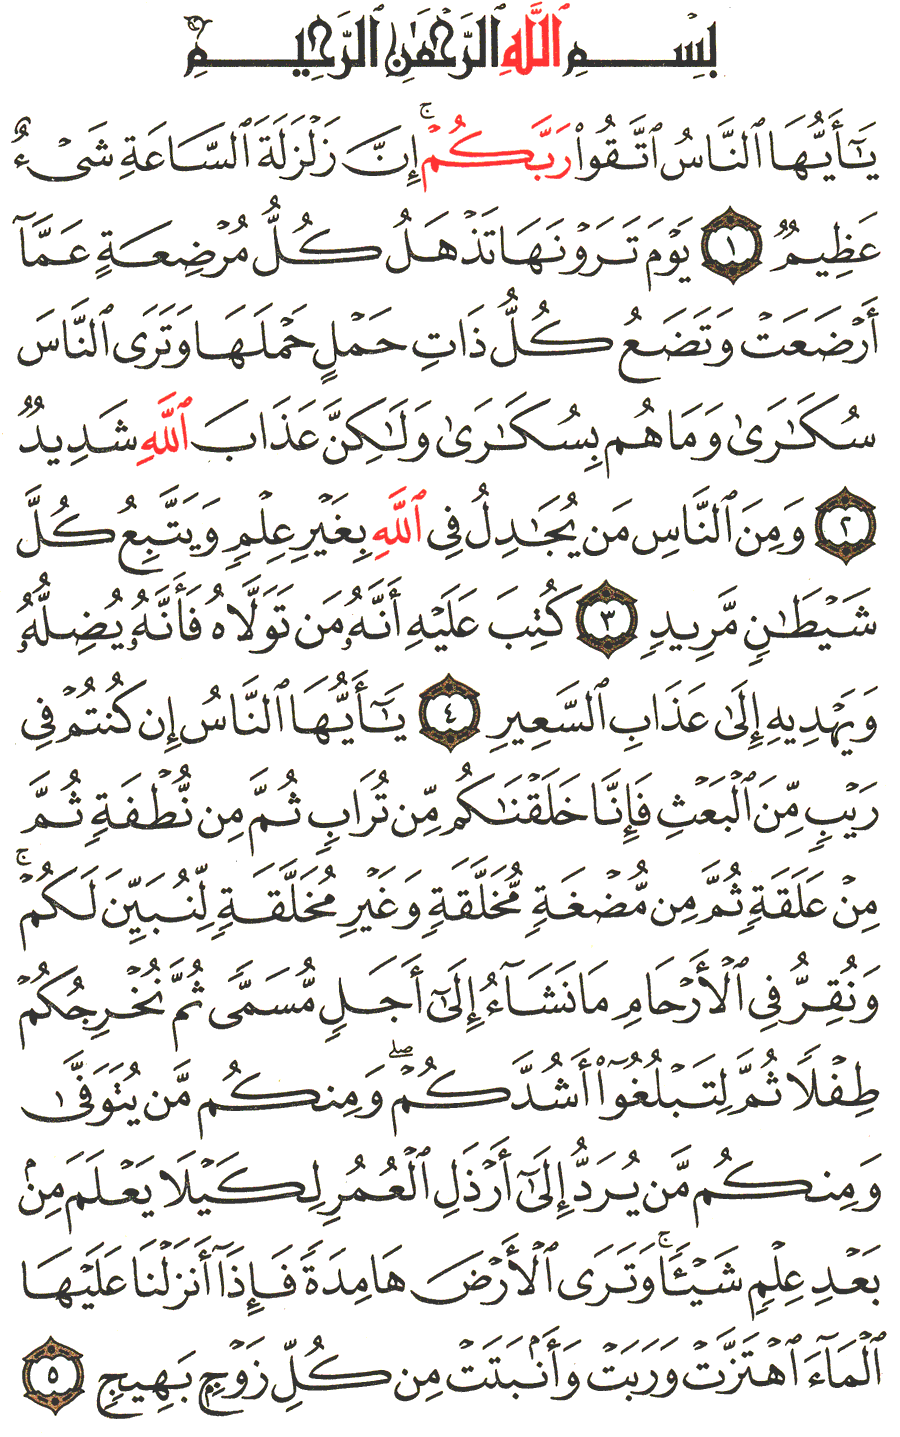 الصفحة رقم 332  من القرآن الكريم مكتوبة من المصحف